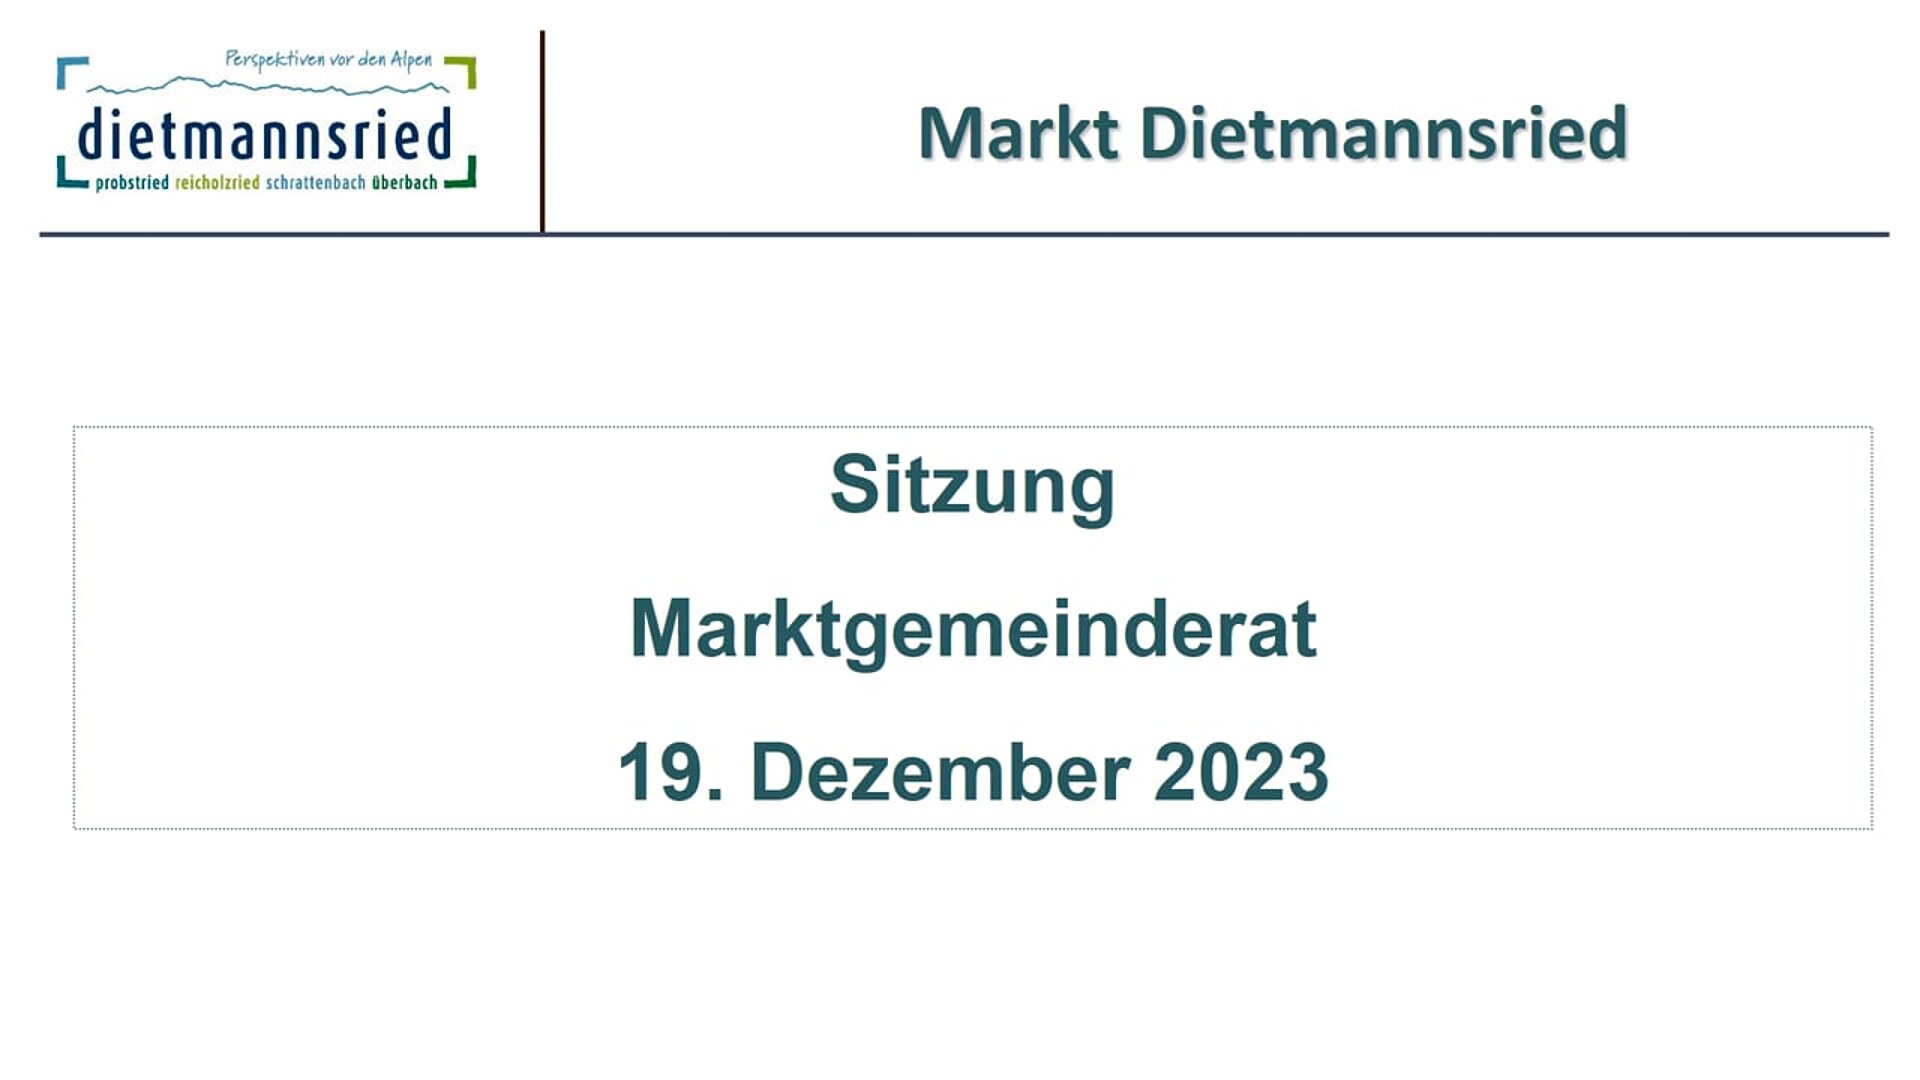 Sitzung Marktgemeinderat vom 19. Dezember 2023